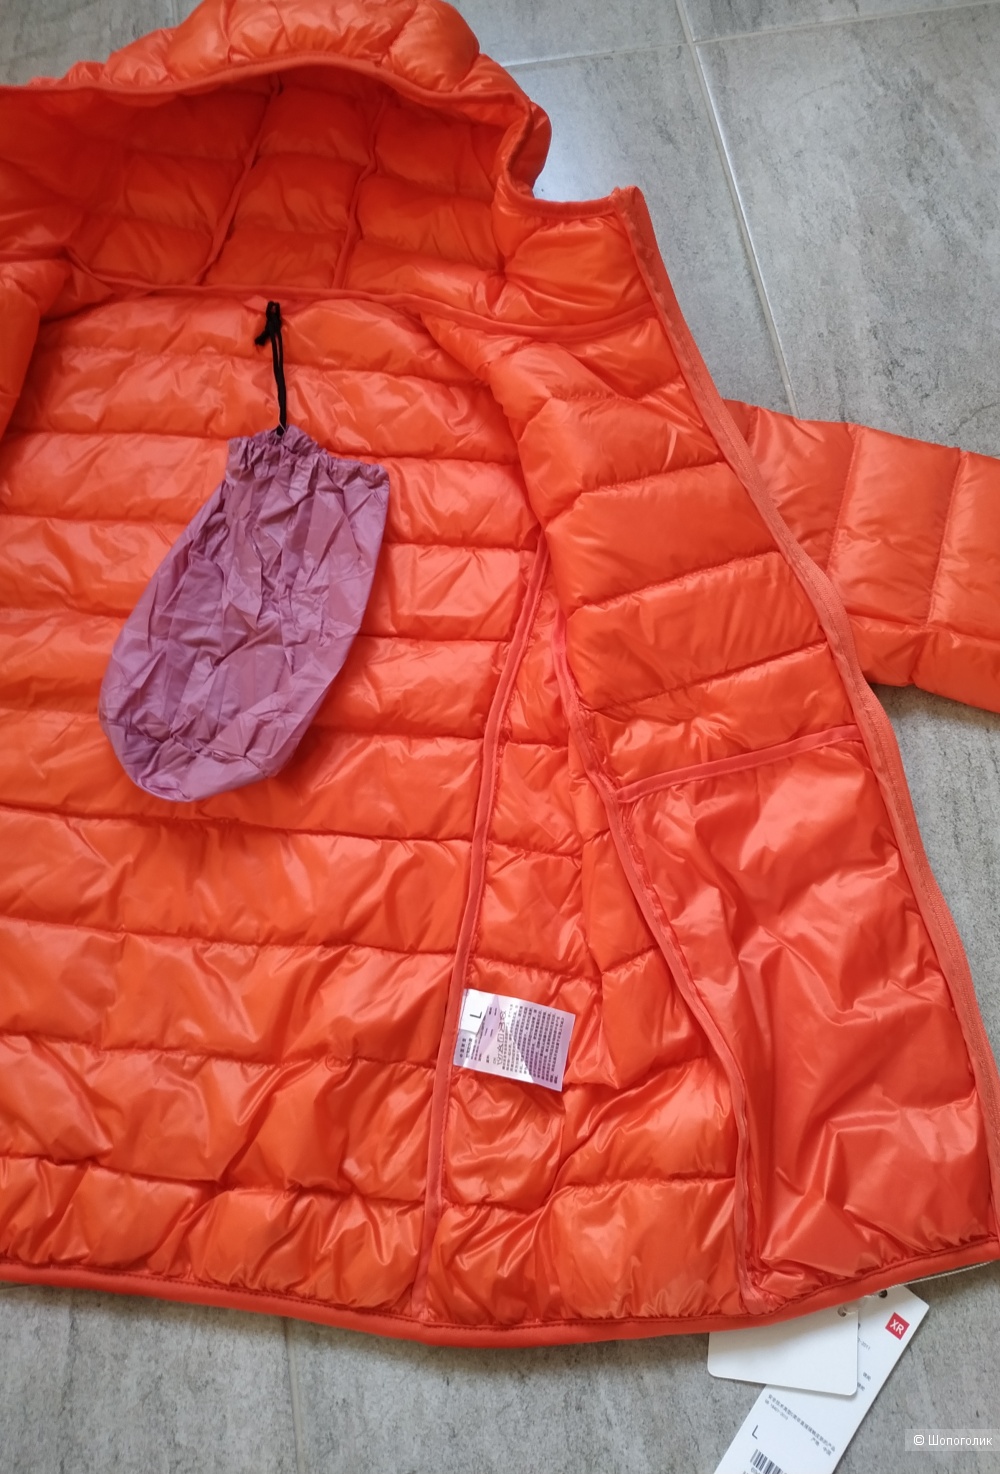 Лёгкий пуховик - куртка XR, размер S - M